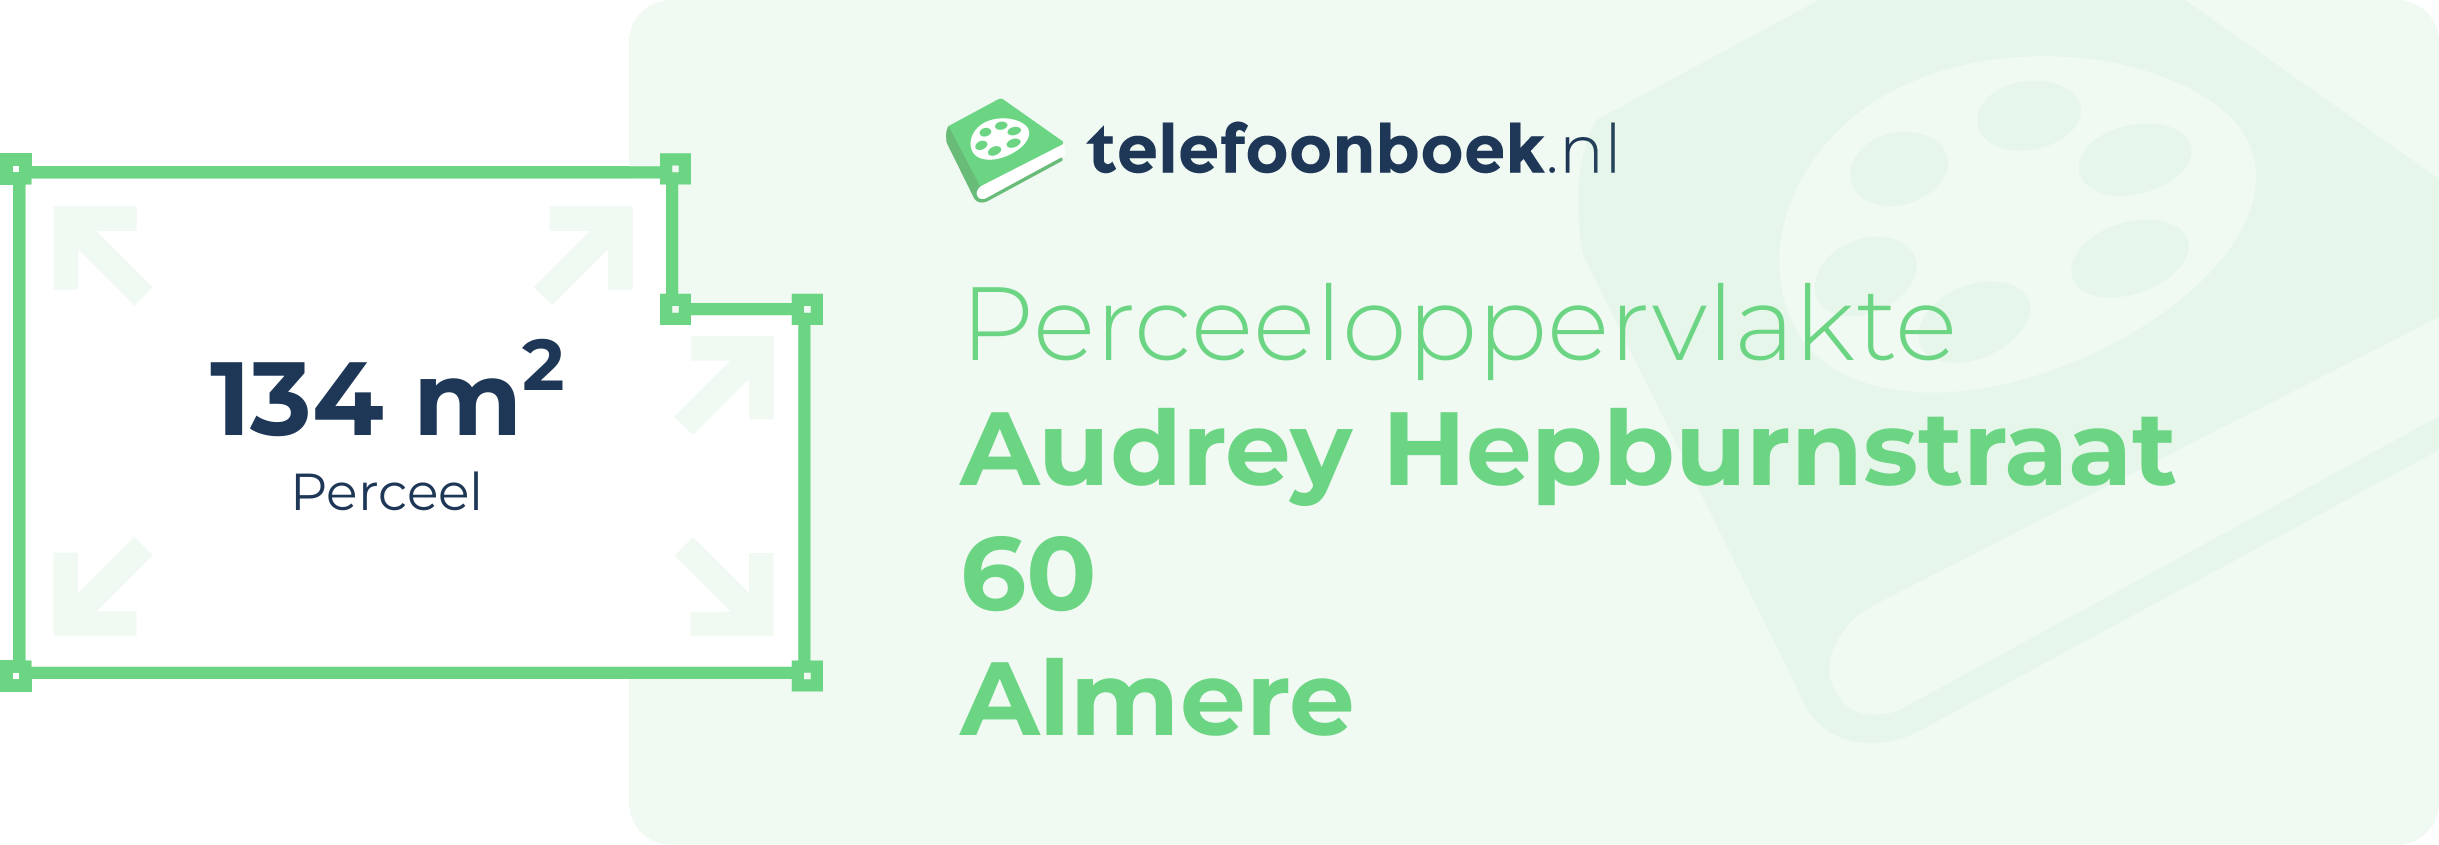 Perceeloppervlakte Audrey Hepburnstraat 60 Almere